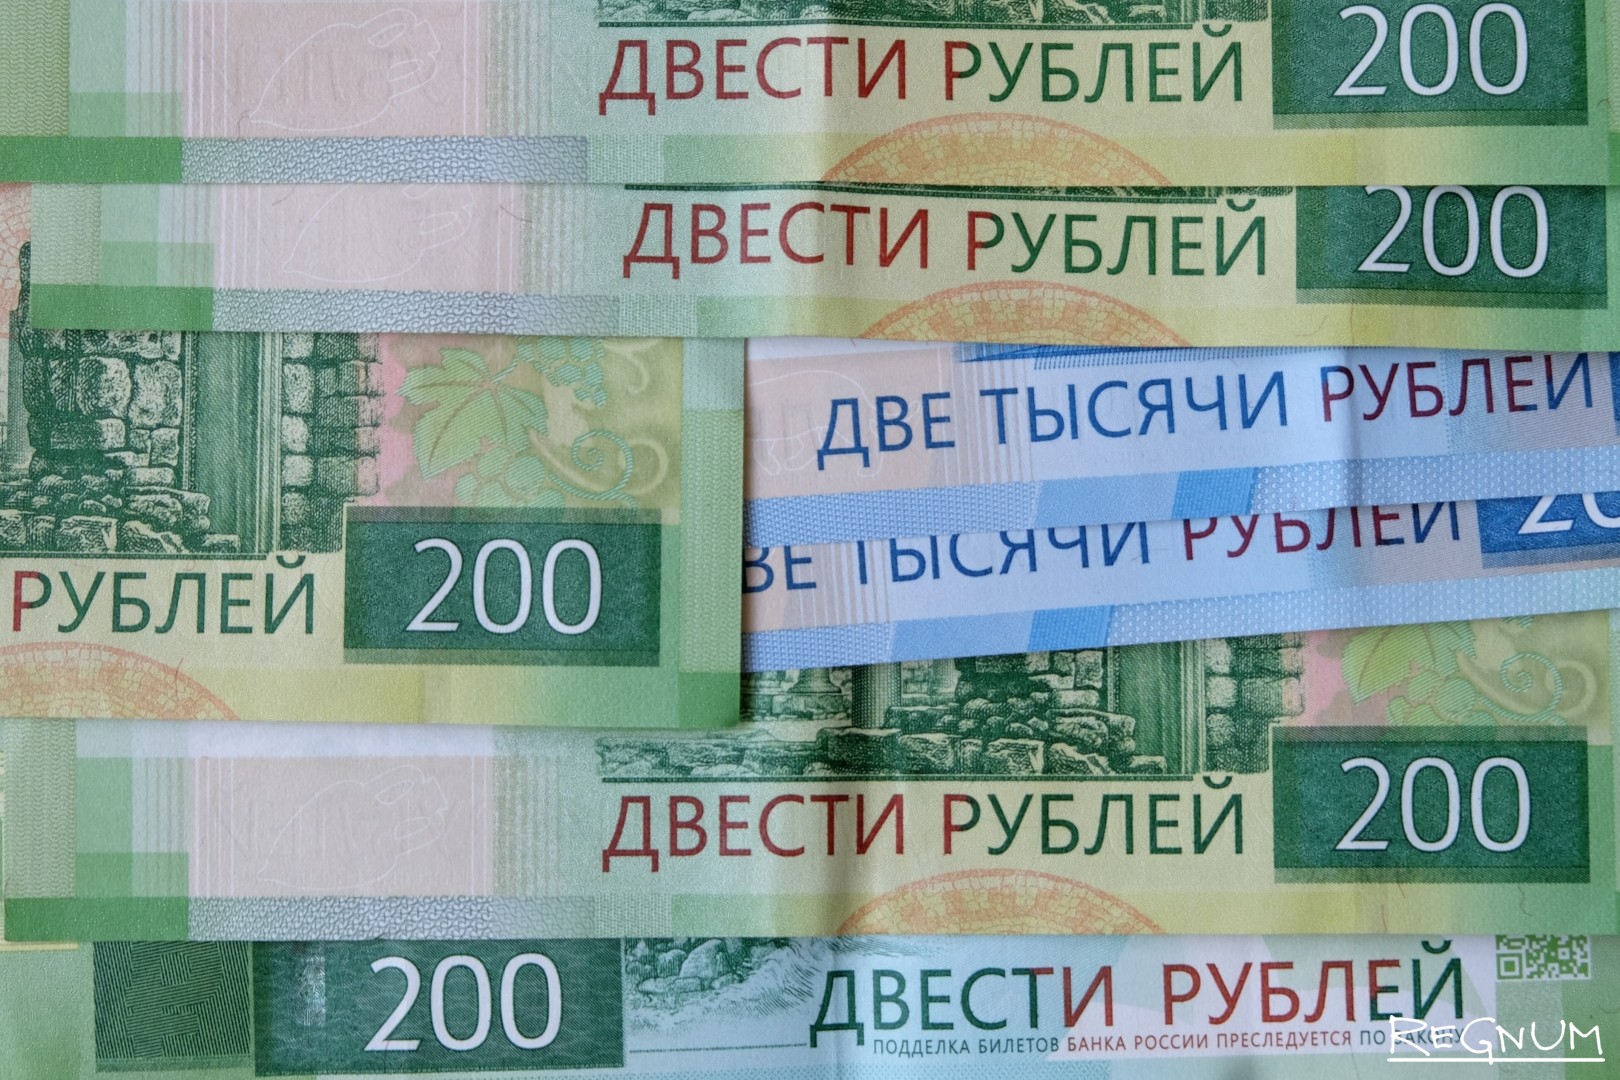 9 200 в рублях